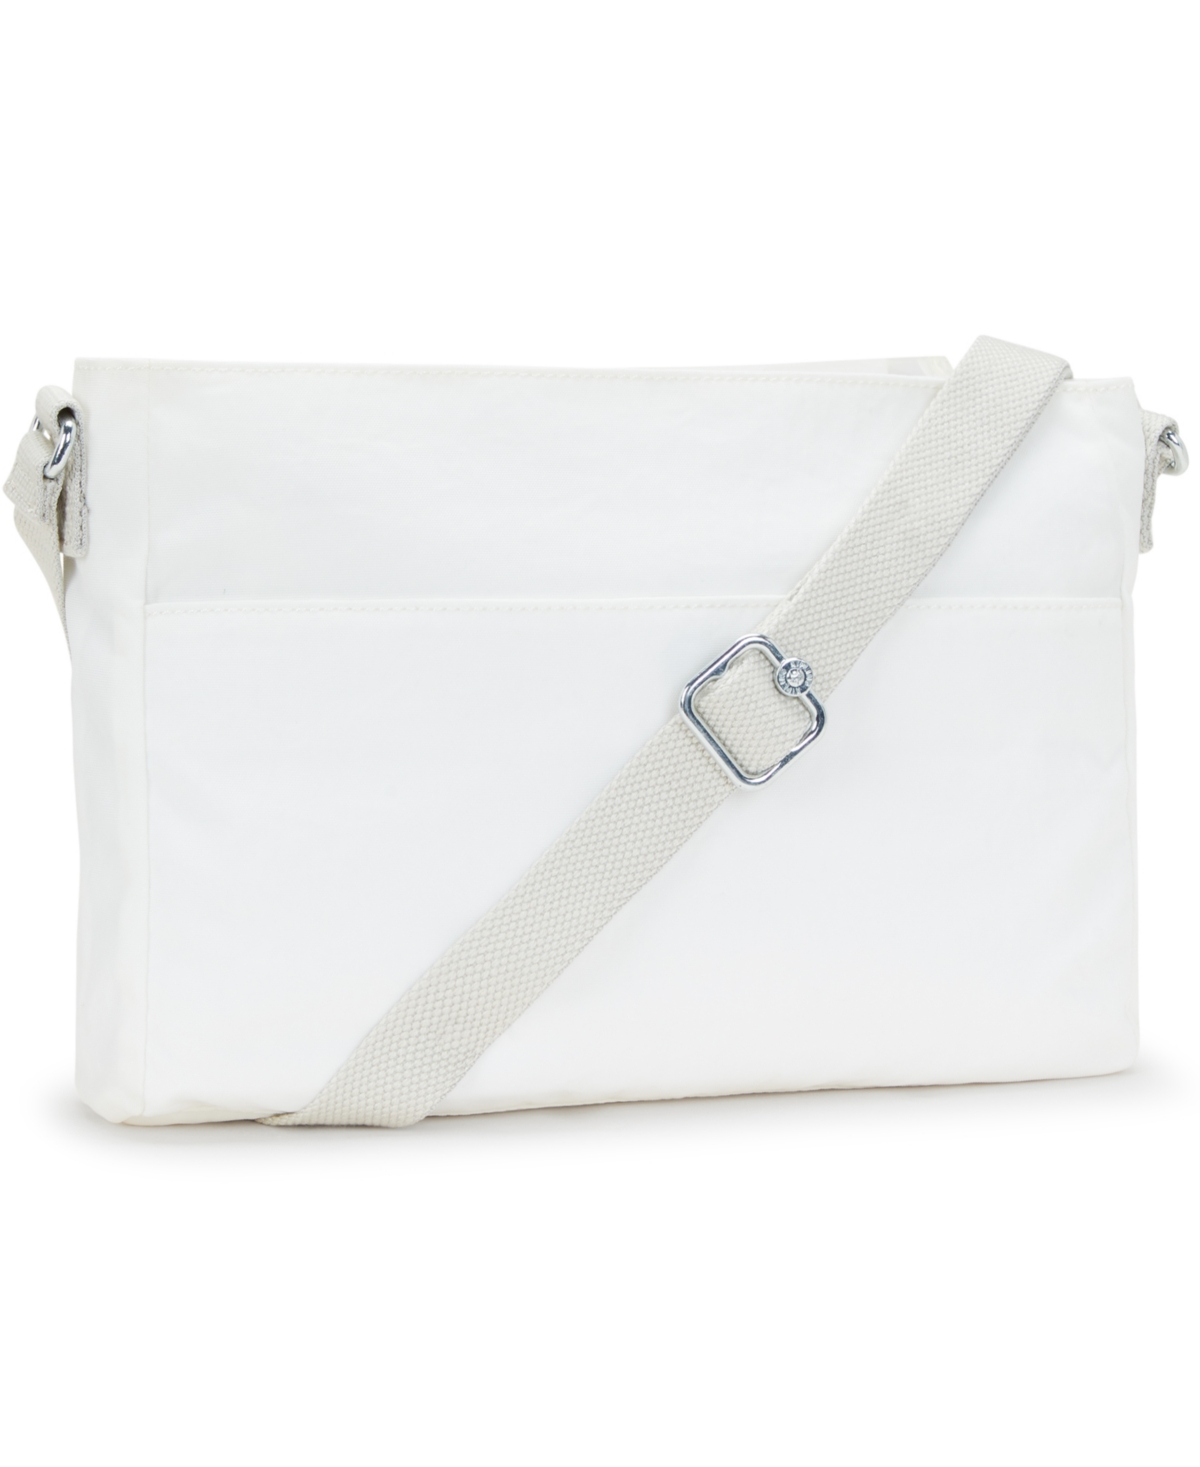 Shop Kipling New Angie Handbag In Pure Alabaster